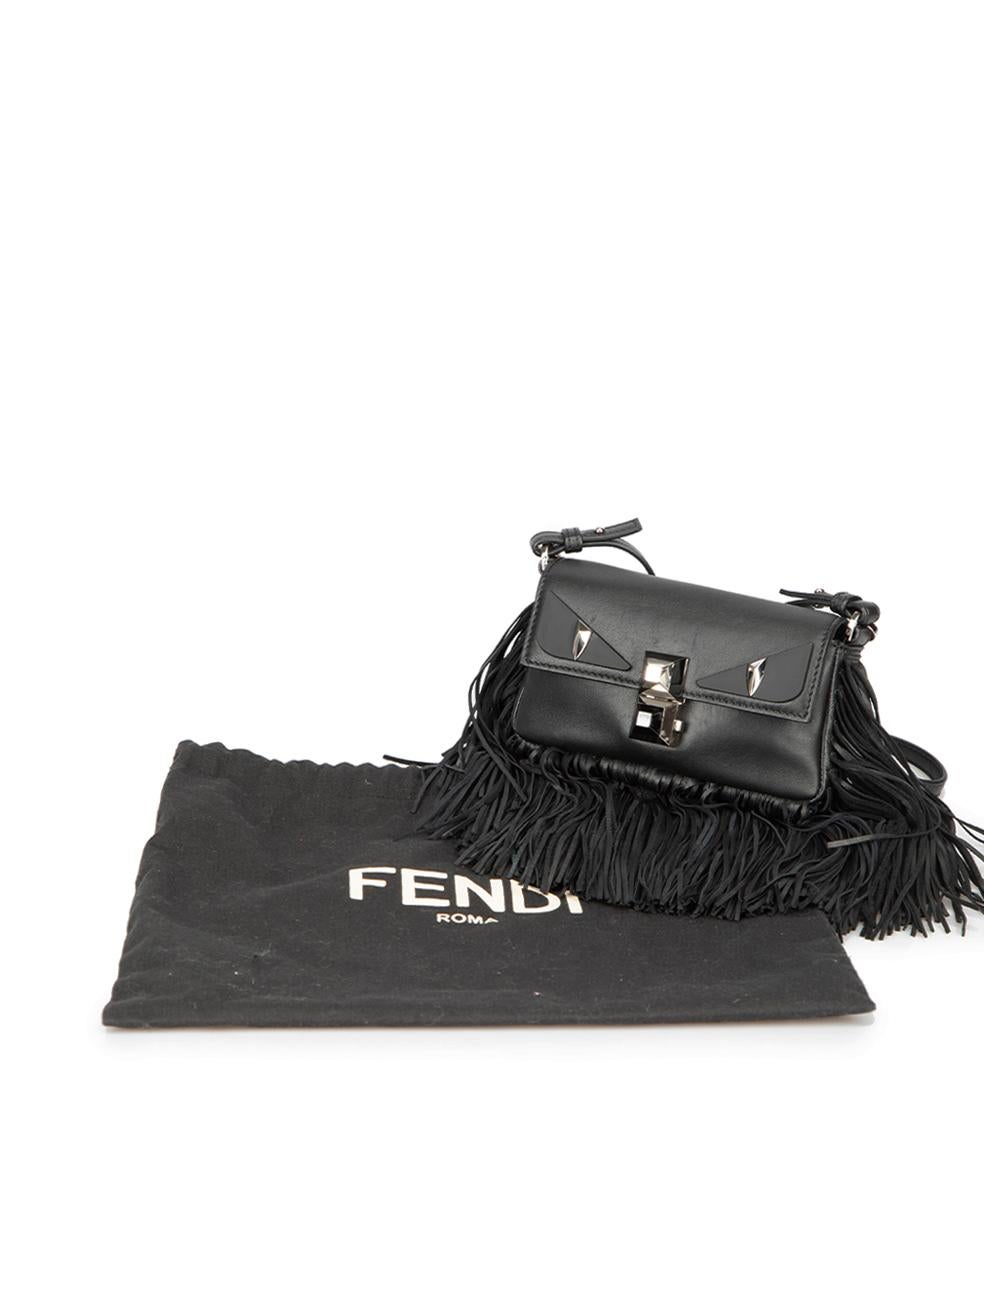 Fendi Women's Black Leather Fringe Monster Micro Baguette For Sale 3